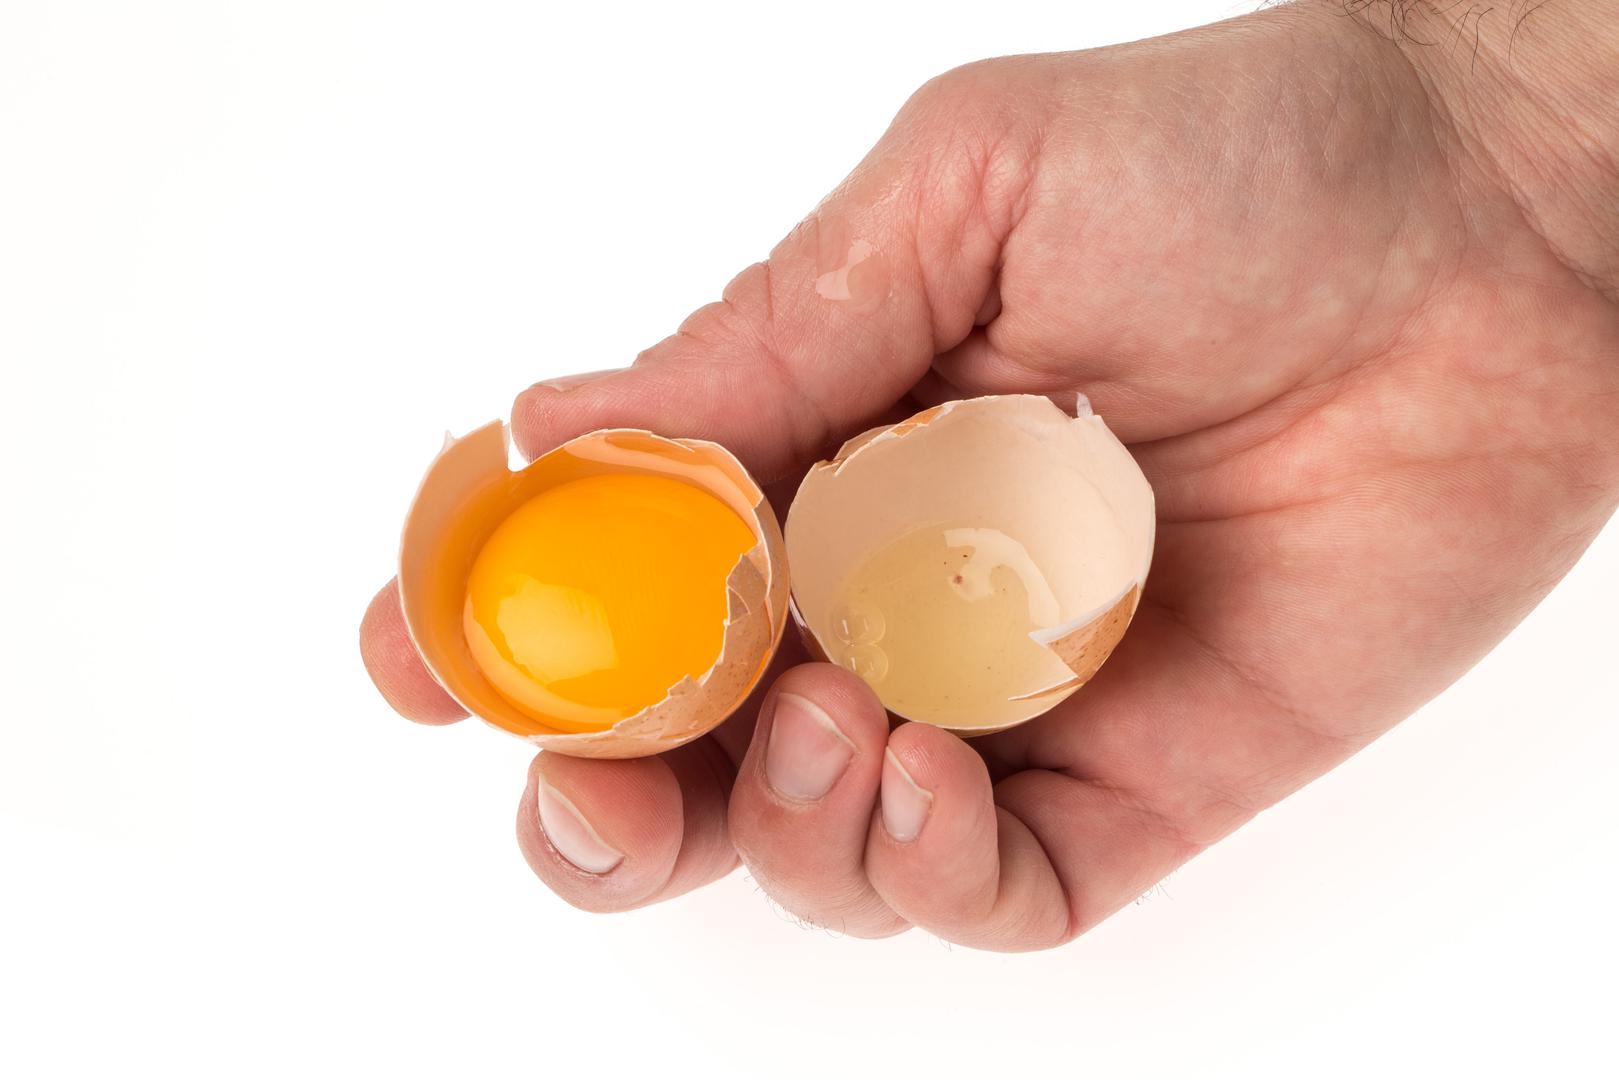 2. Dobro promućkajte jaja prije sipanja u tavu - i to u velikoj zdjeli, uz velike kružne pokrete

